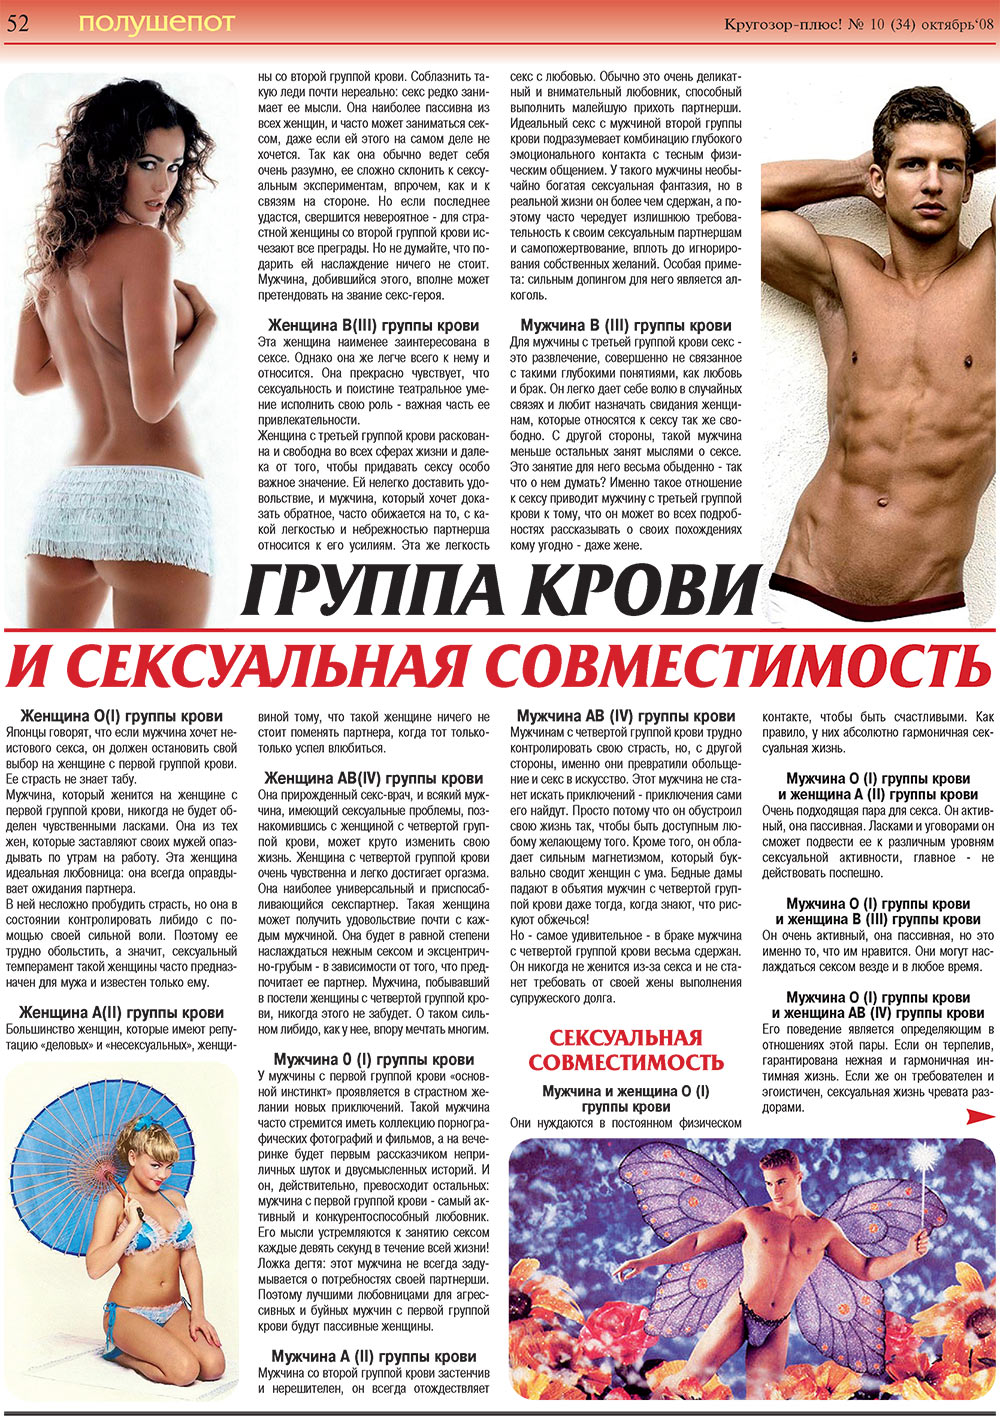 Кругозор плюс!, газета. 2008 №10 стр.52